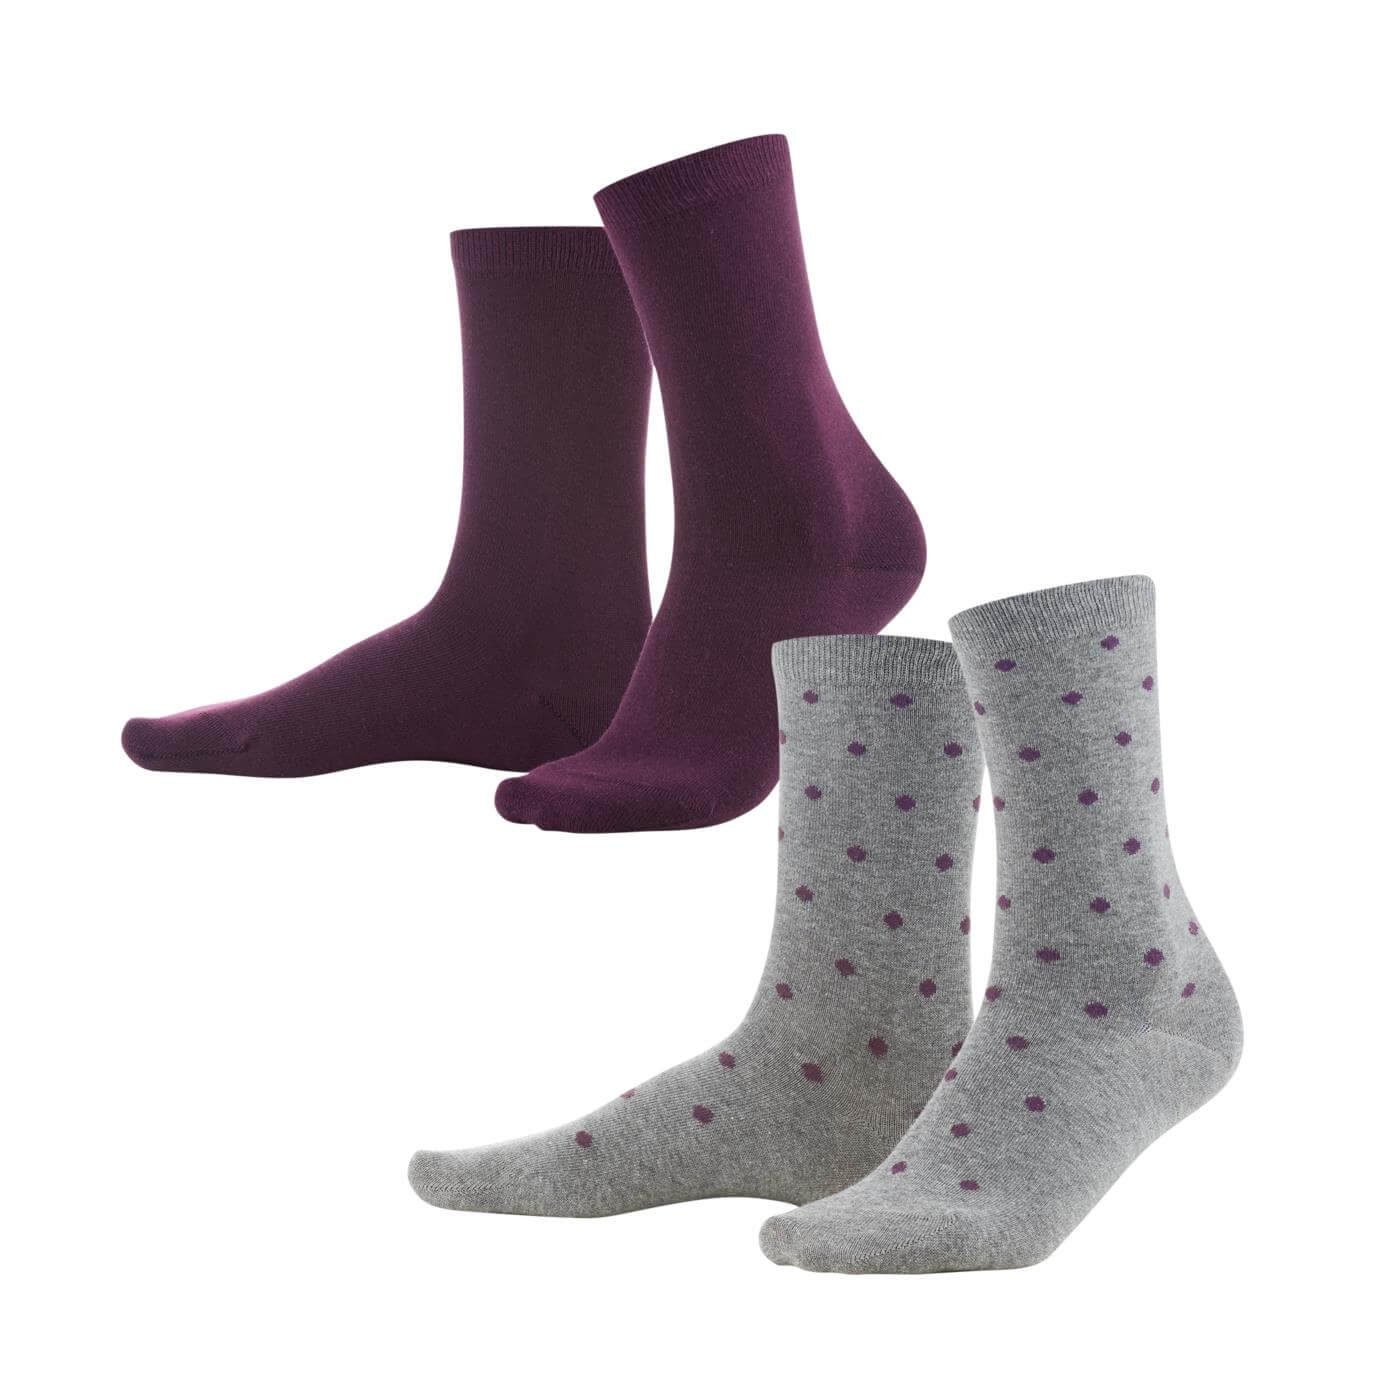 LIVING CRAFTS Socken BETTINA Einmal dezent gepunktet, einmal im passenden Uni-Ton Dark Prune/Dots